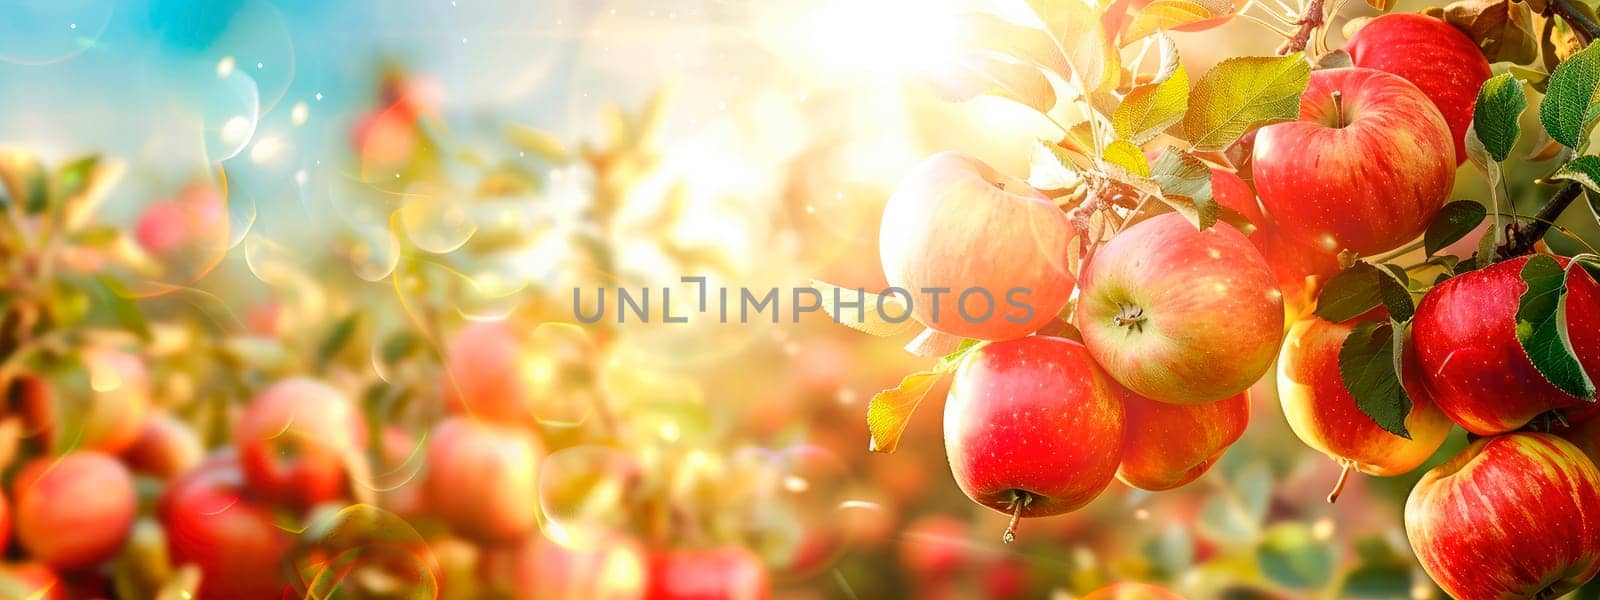 Apple harvest in the garden. selective focus. food.